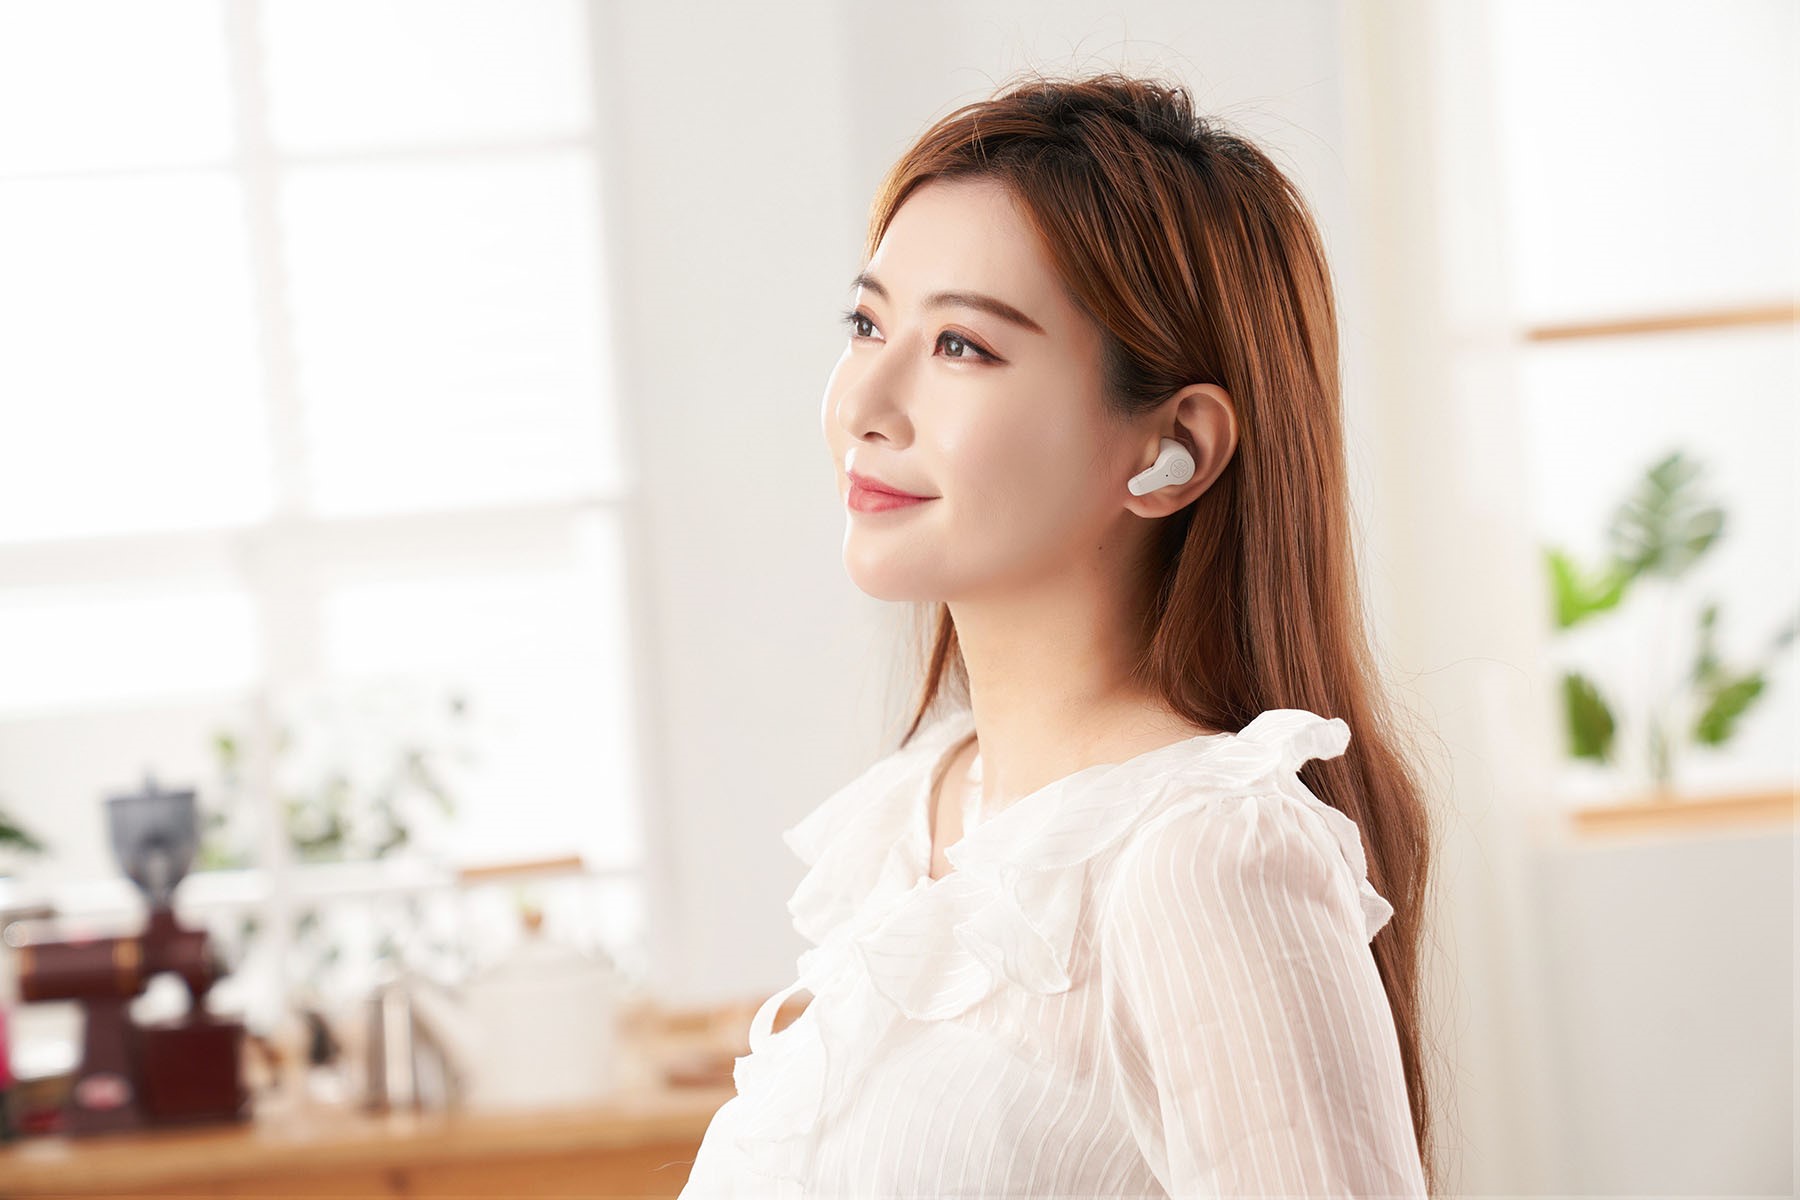 全新的 TW-EF3A 半入耳式真無線耳機可為耳敏人士提供更適耳的佩戴體驗，同時也能為喜愛從事戶外休閒活動的族群，帶來足夠的環境感知及掌握度，在聆聽音樂的同時也能聽見四週環境音，安全性完全不必擔心。